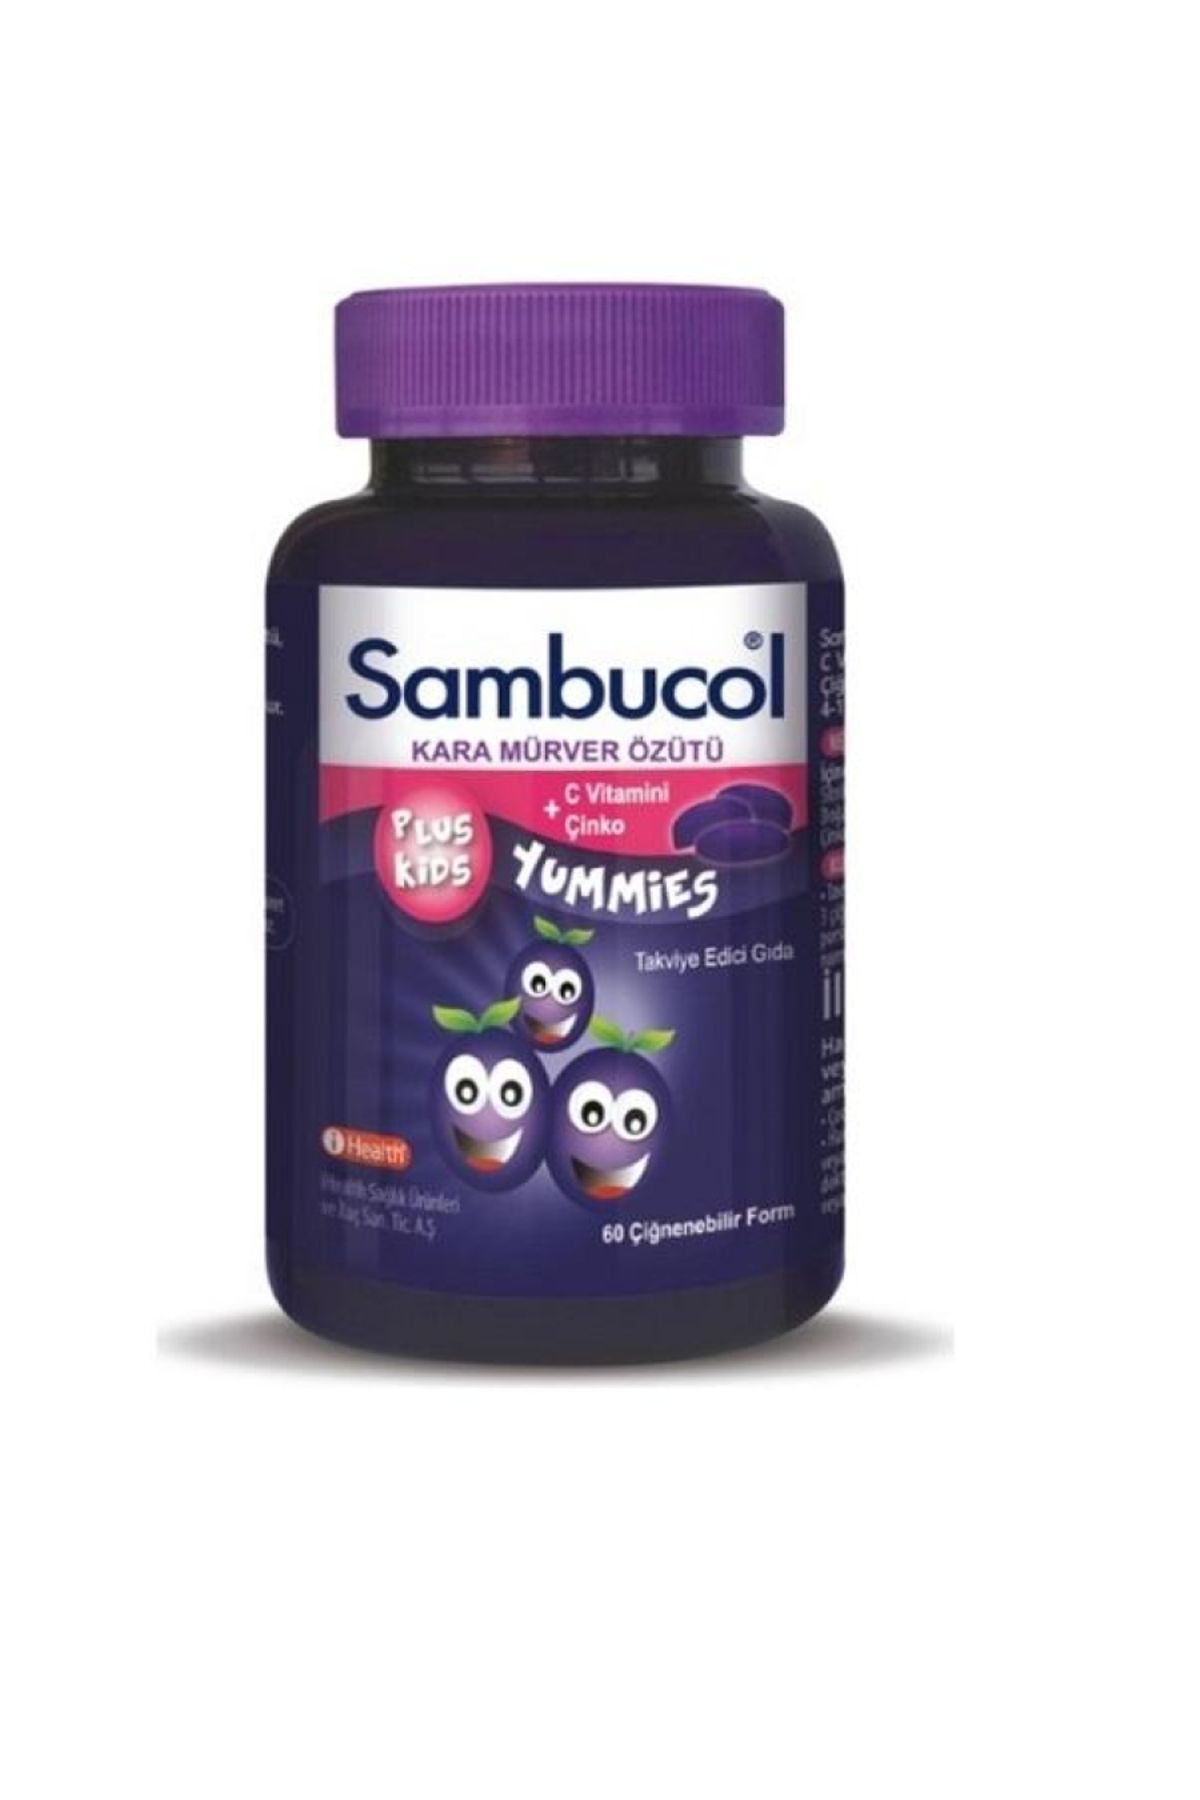 Sambucol Plus Kids Yummies Çocuklar Için Takviye Edici Gıda 60 Adet